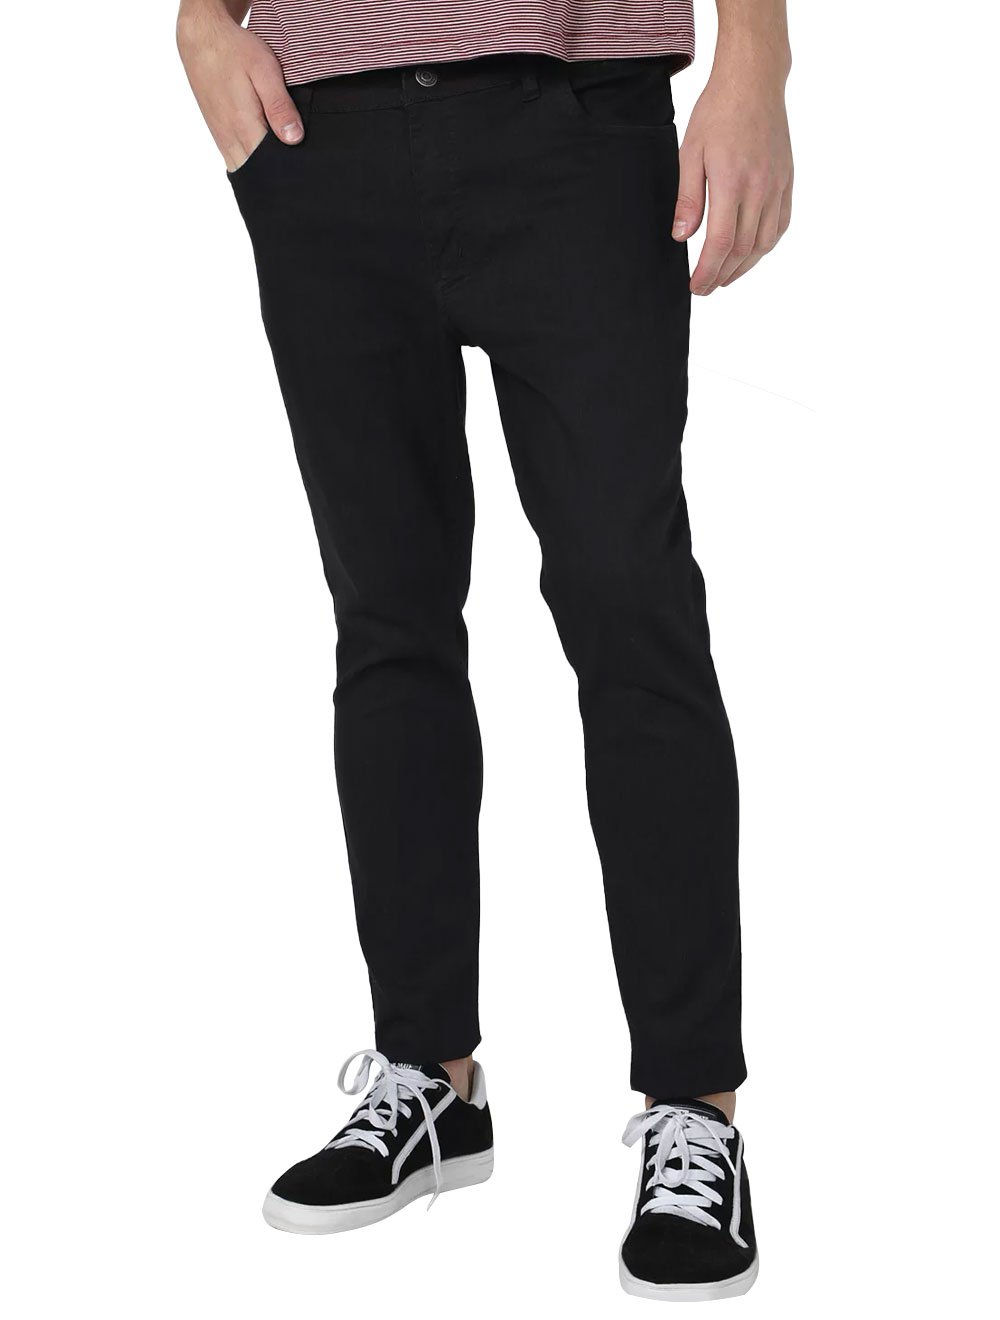 Calça Aeropostale Jeans Masculina Slim Pockets Black Preta